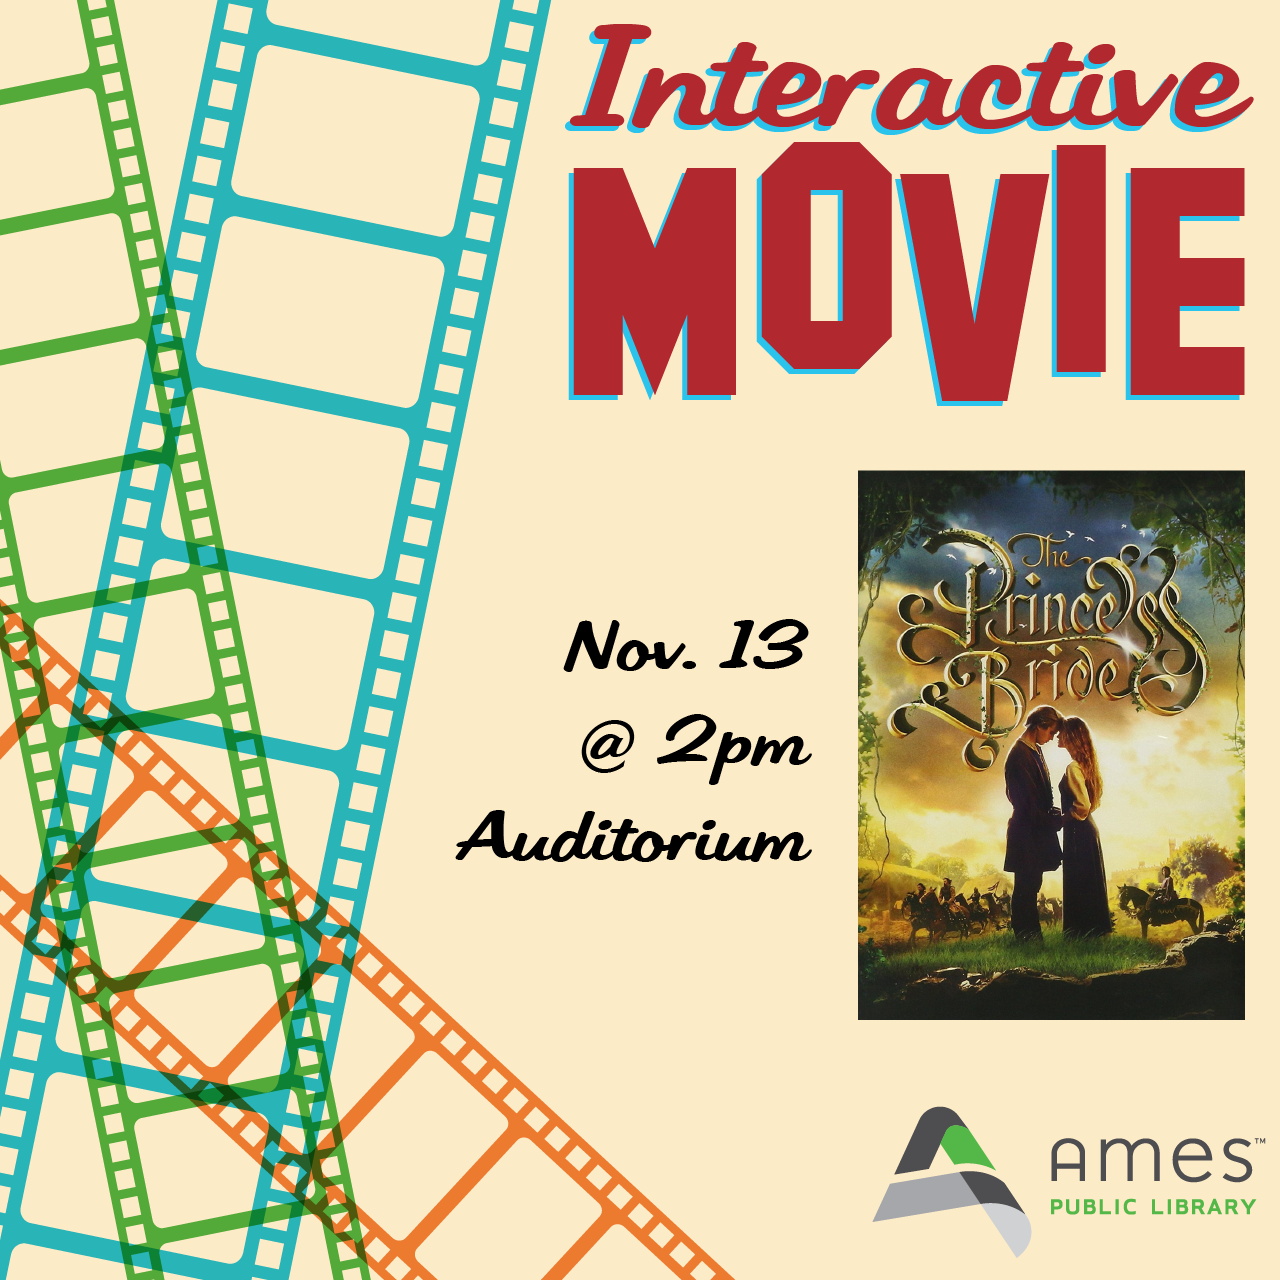 Interactive Movie: The Princess Bride. Nov. 13 @ 2pm, Auditorium